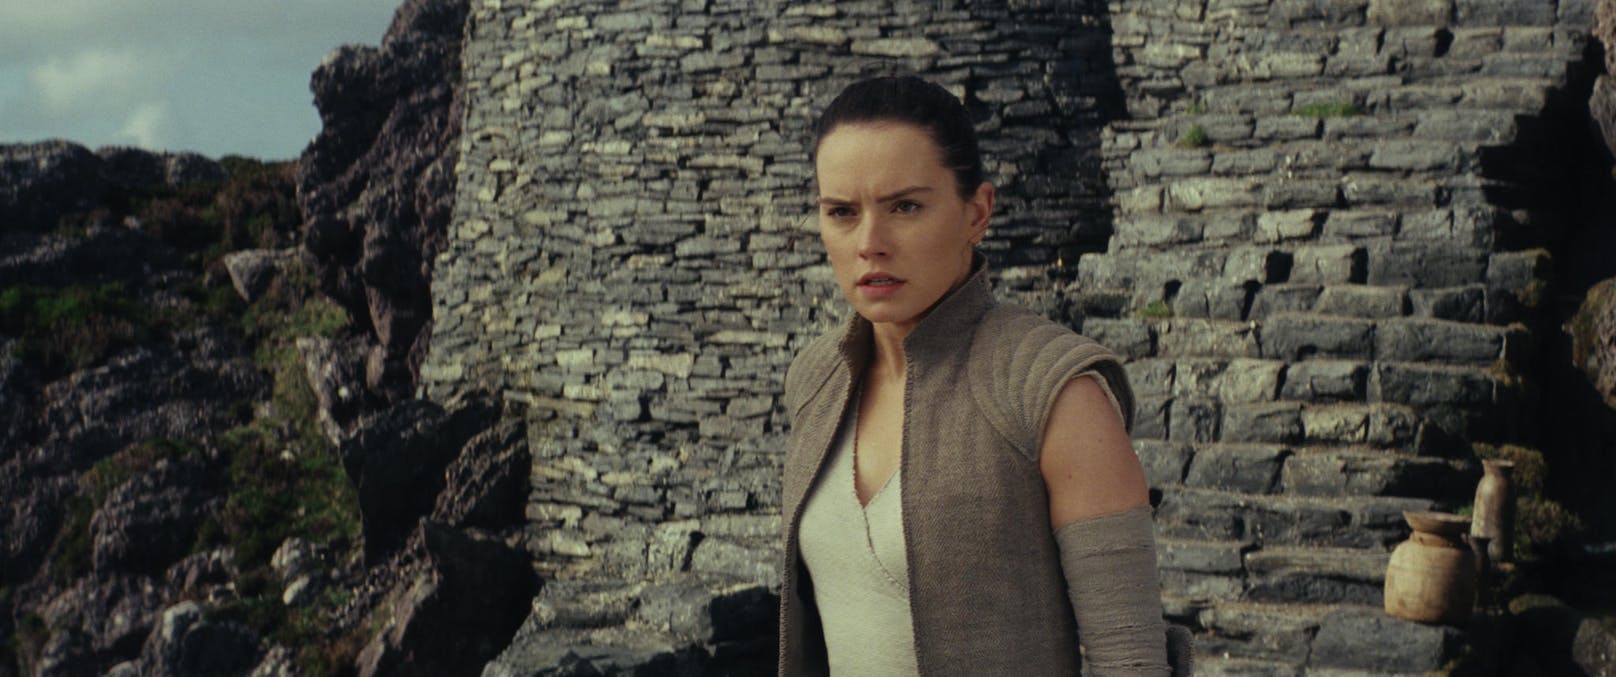 STAR WARS EPISODE IX: Im Abschluss der neuen Trilogie fordert Rey (Daisy Ridley, hier in "Star Wars VIII") den Schurken Kylo Ren (Adam Driver) zum finalen Duell heraus. 

Kinostart: 19. Dezember